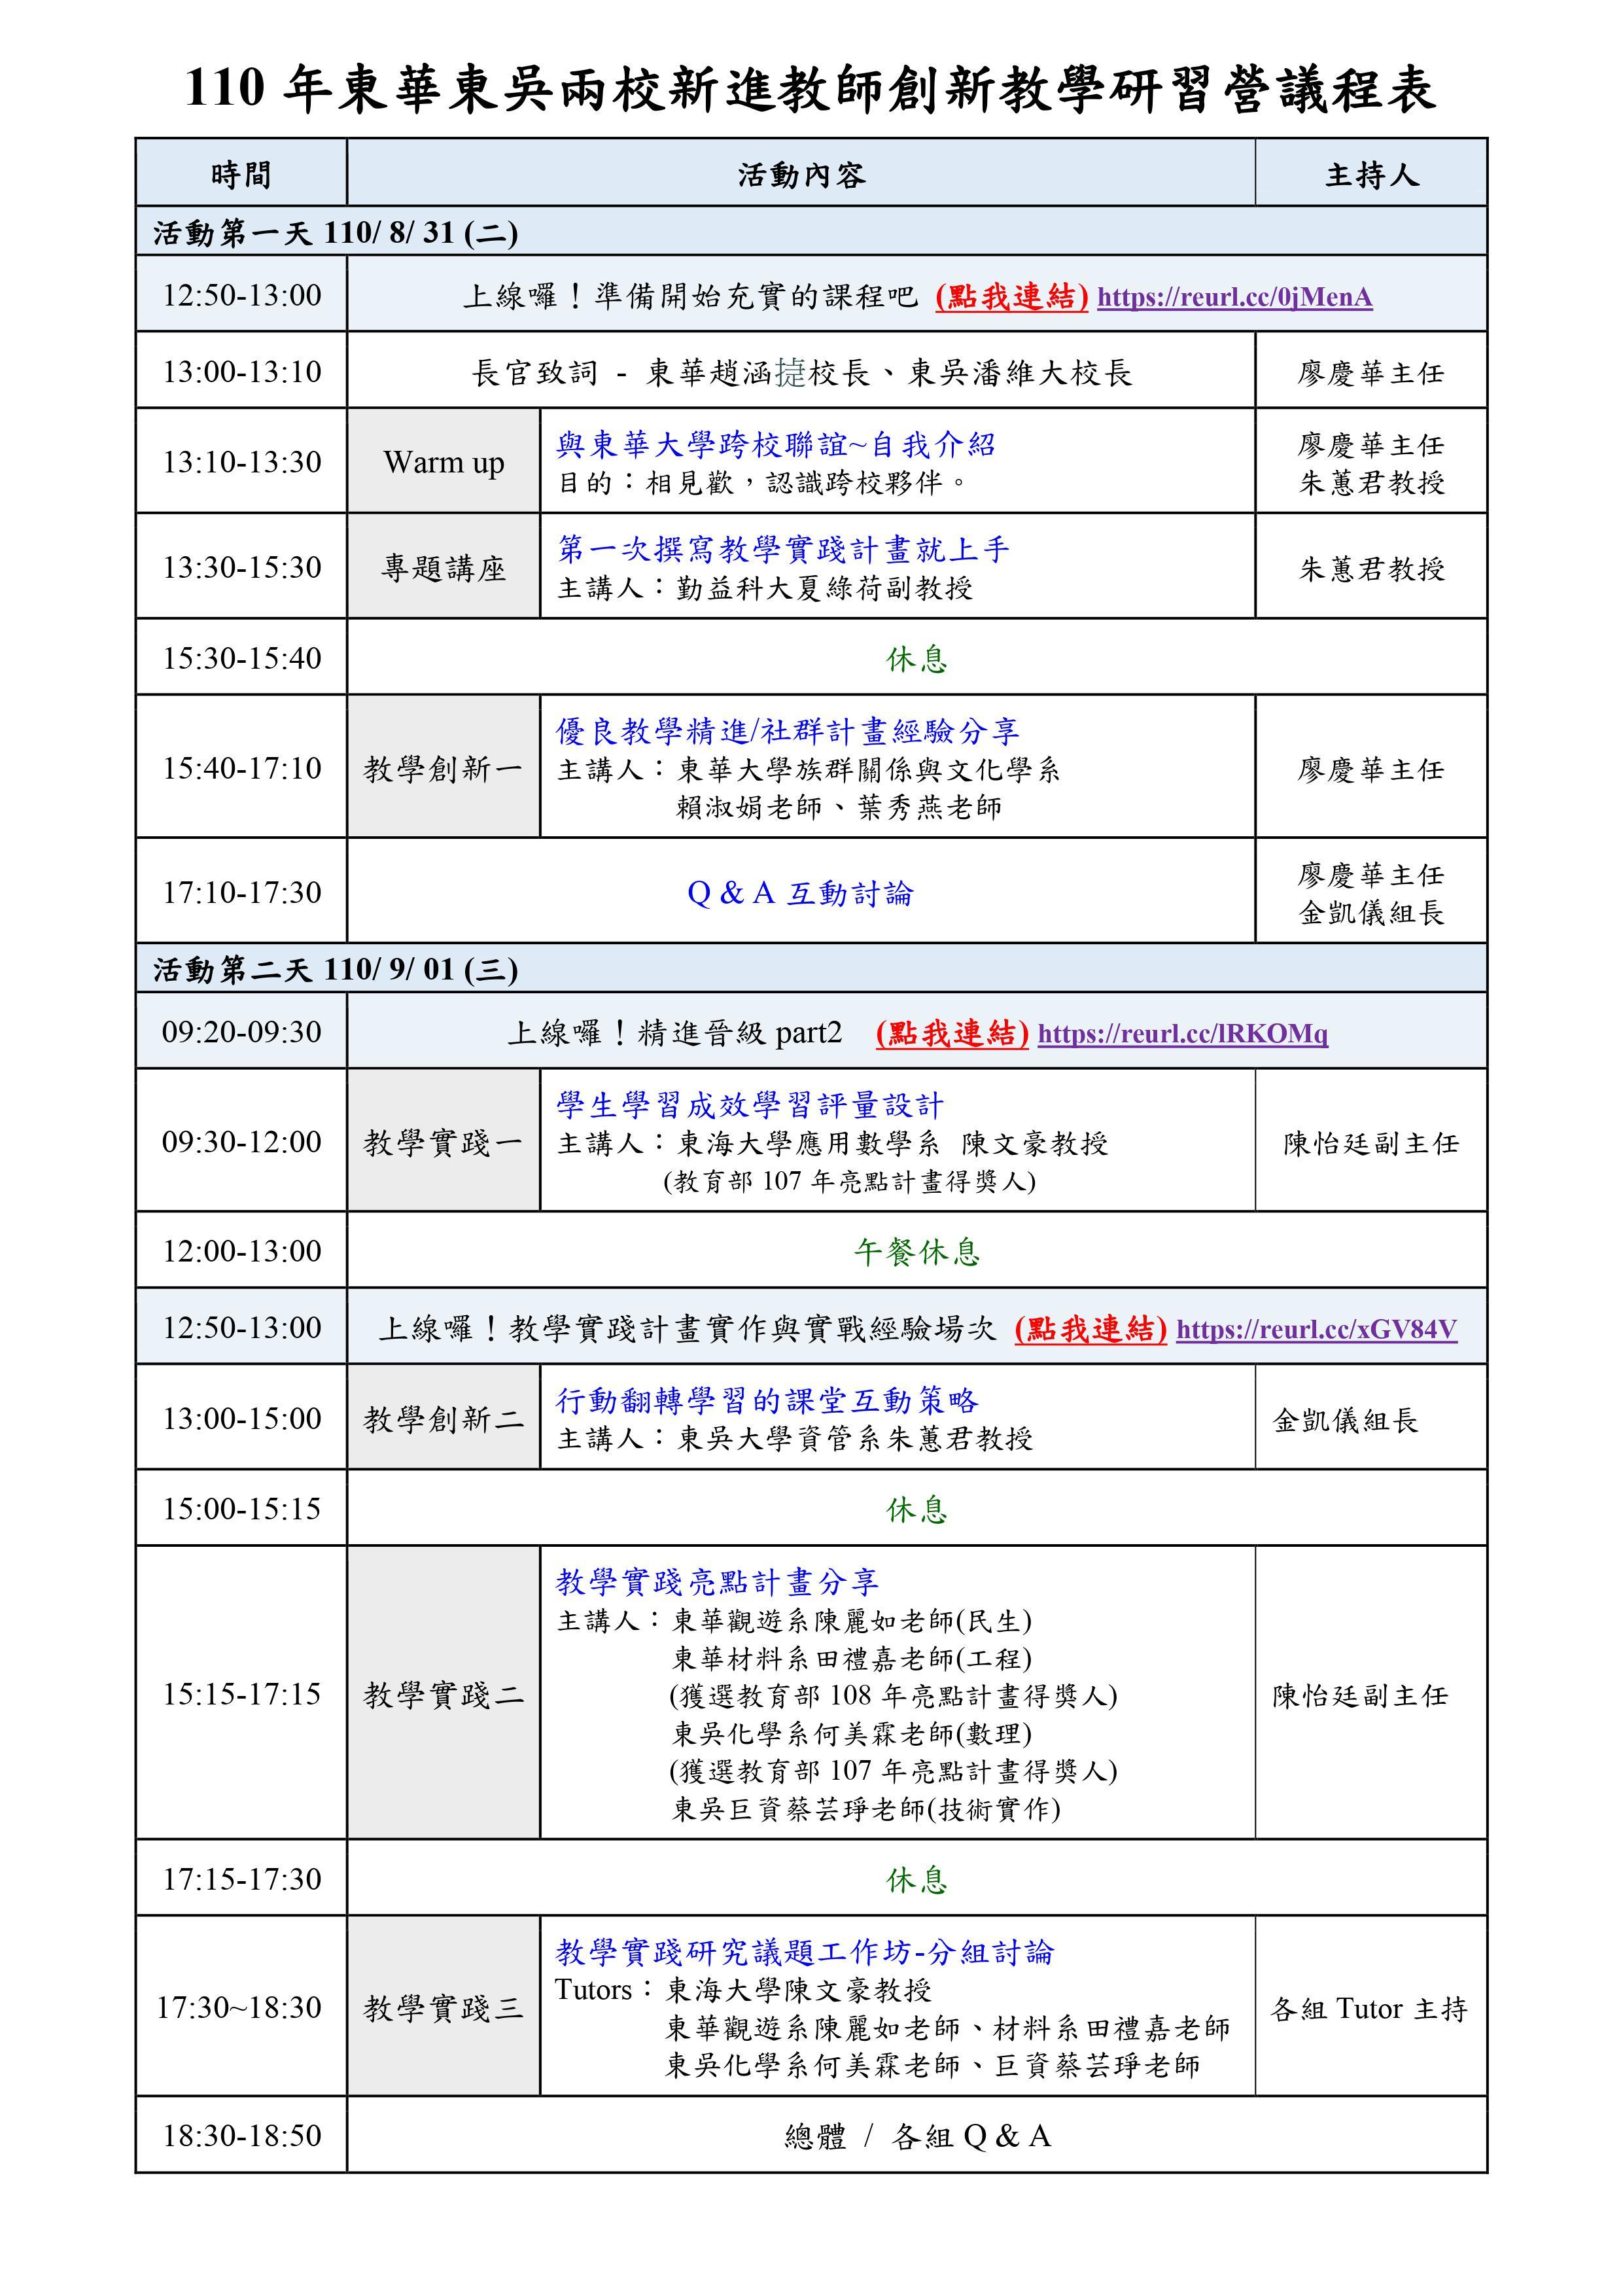 110年東華東吳合辦新進教師創新教學研習營議程表0831_教學卓越中心0823版本